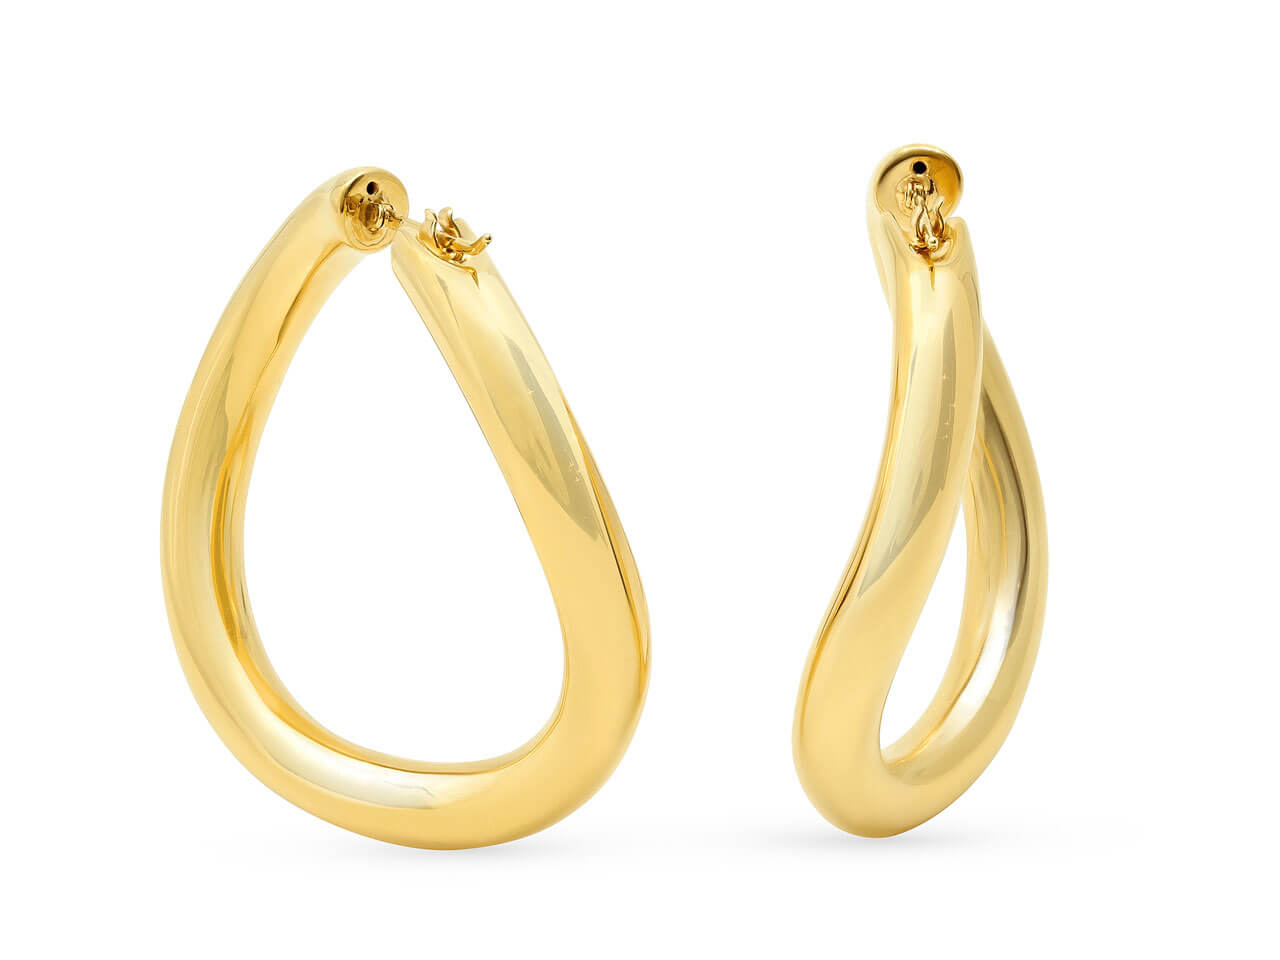 Italian Curved Hoop Earrings in 18K Gold, by Beladora